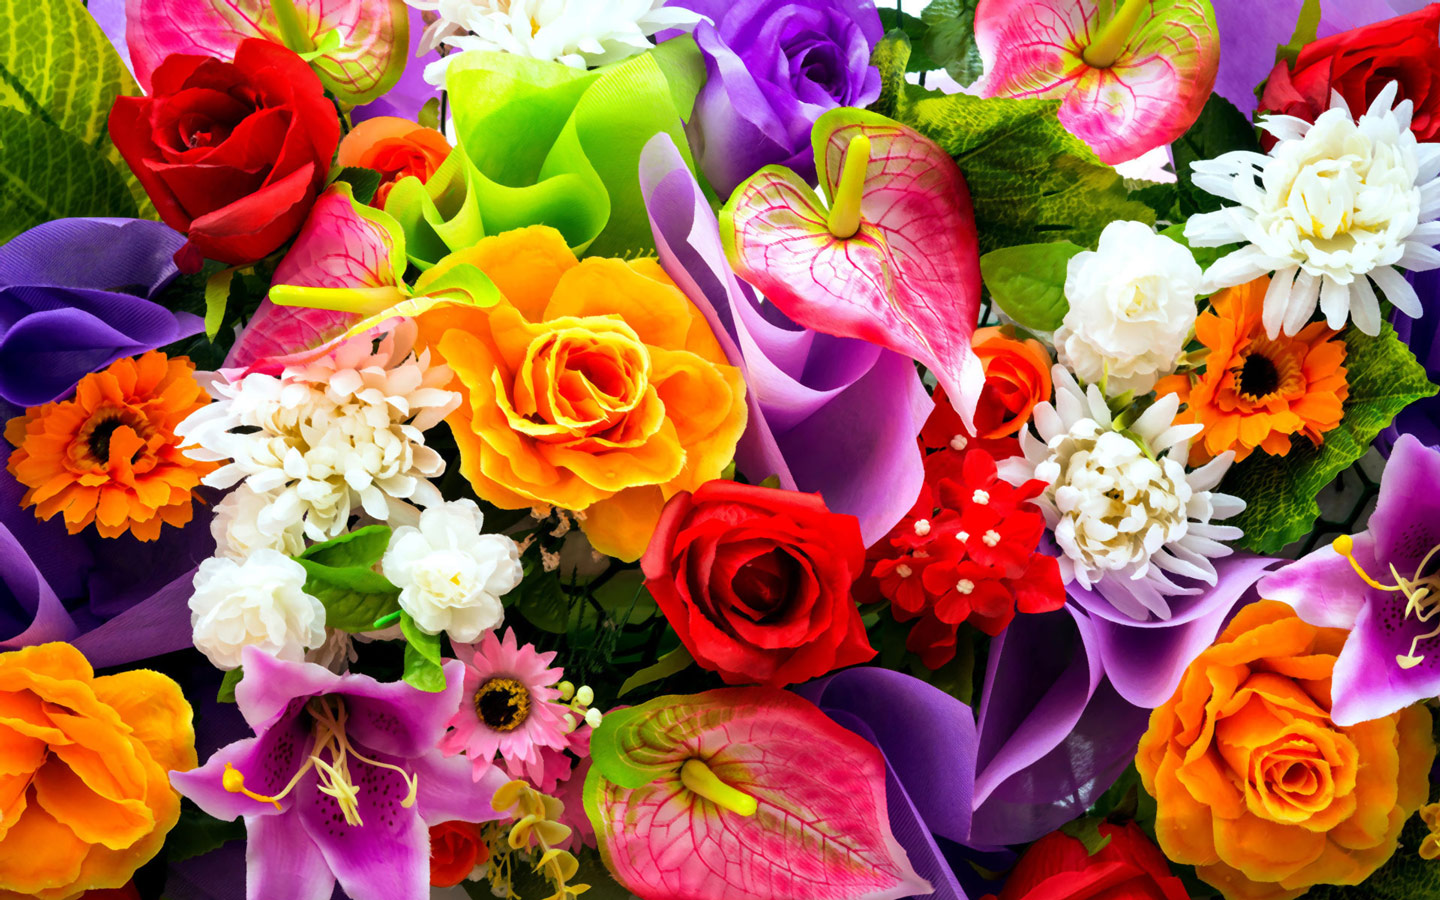 Colorful Floral Bouquet Puter Desktop Wallpaper Pictures